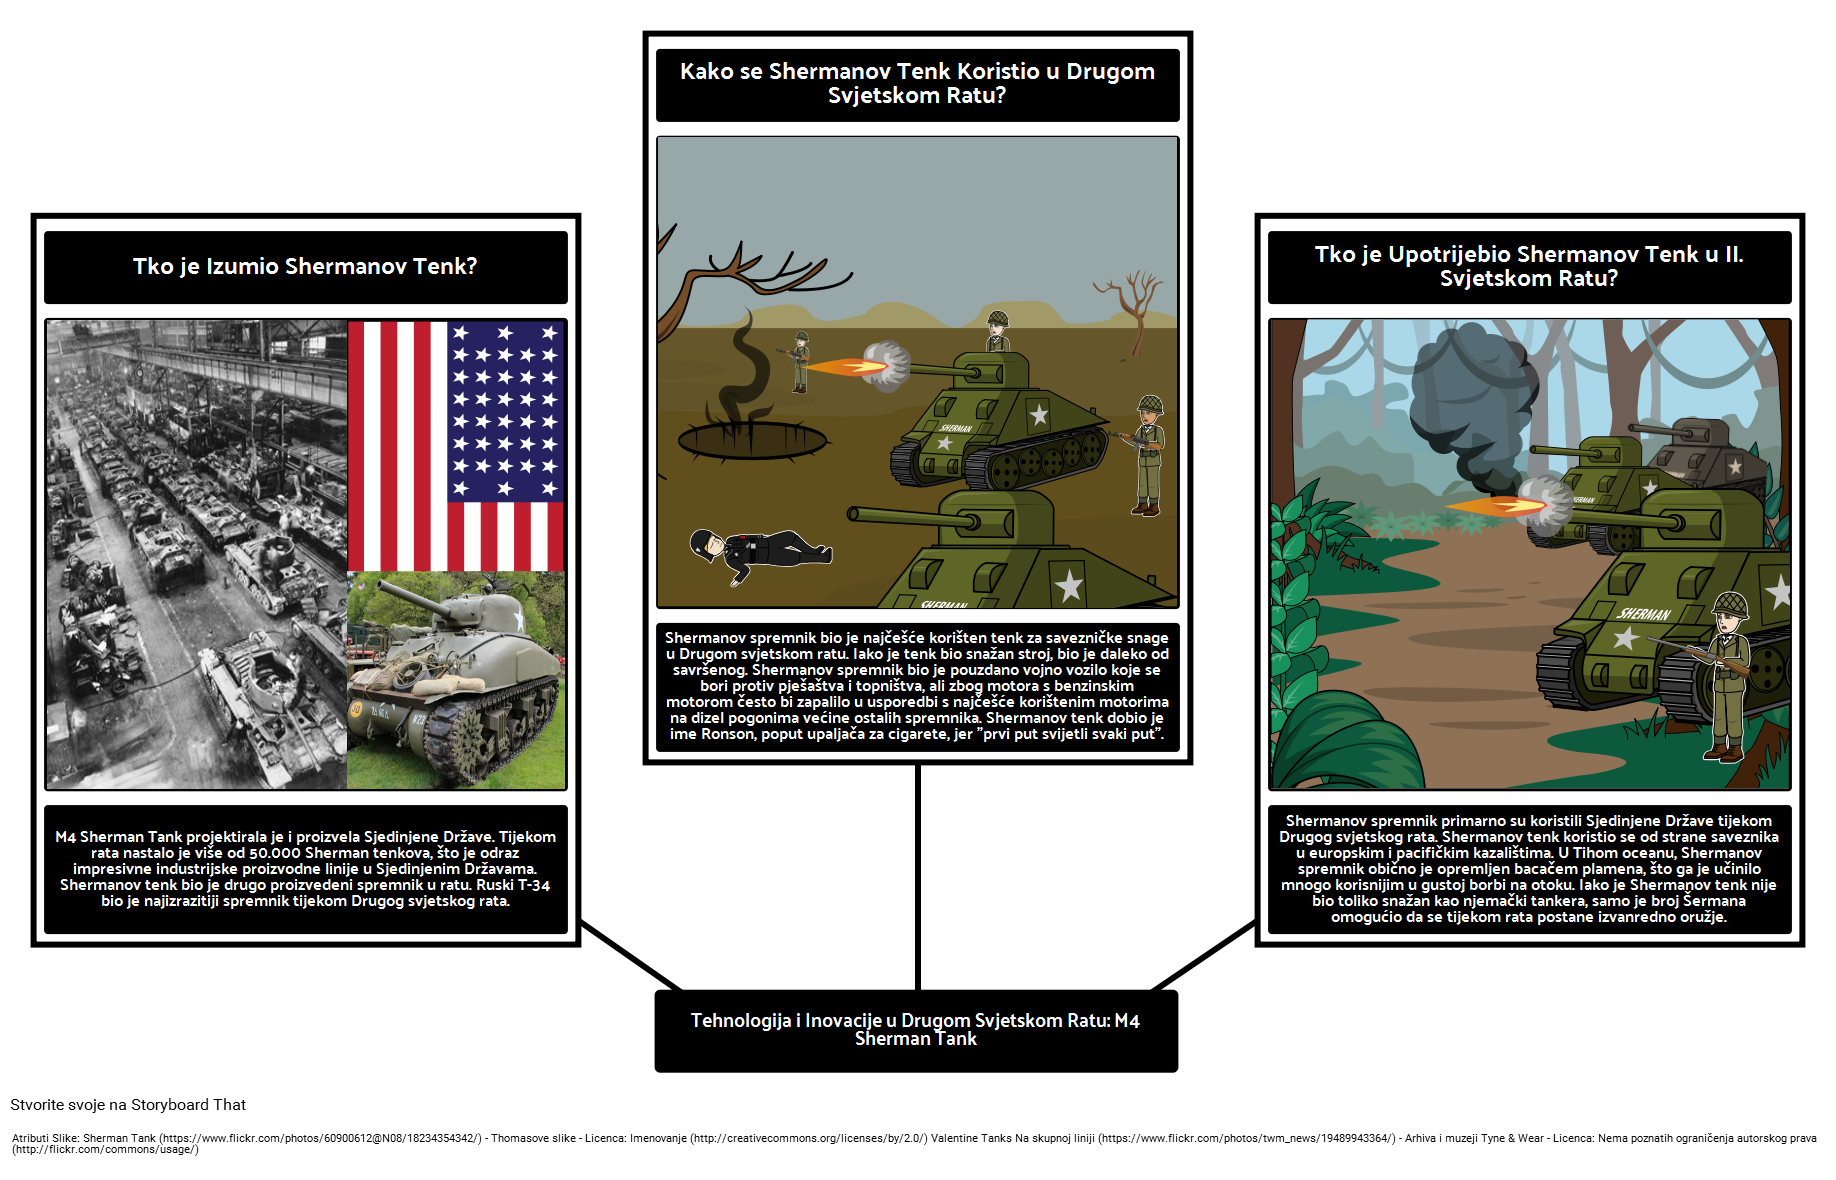 Tehnologija i Inovacije u Drugom Svjetskom Ratu: M4 Sherman Tank